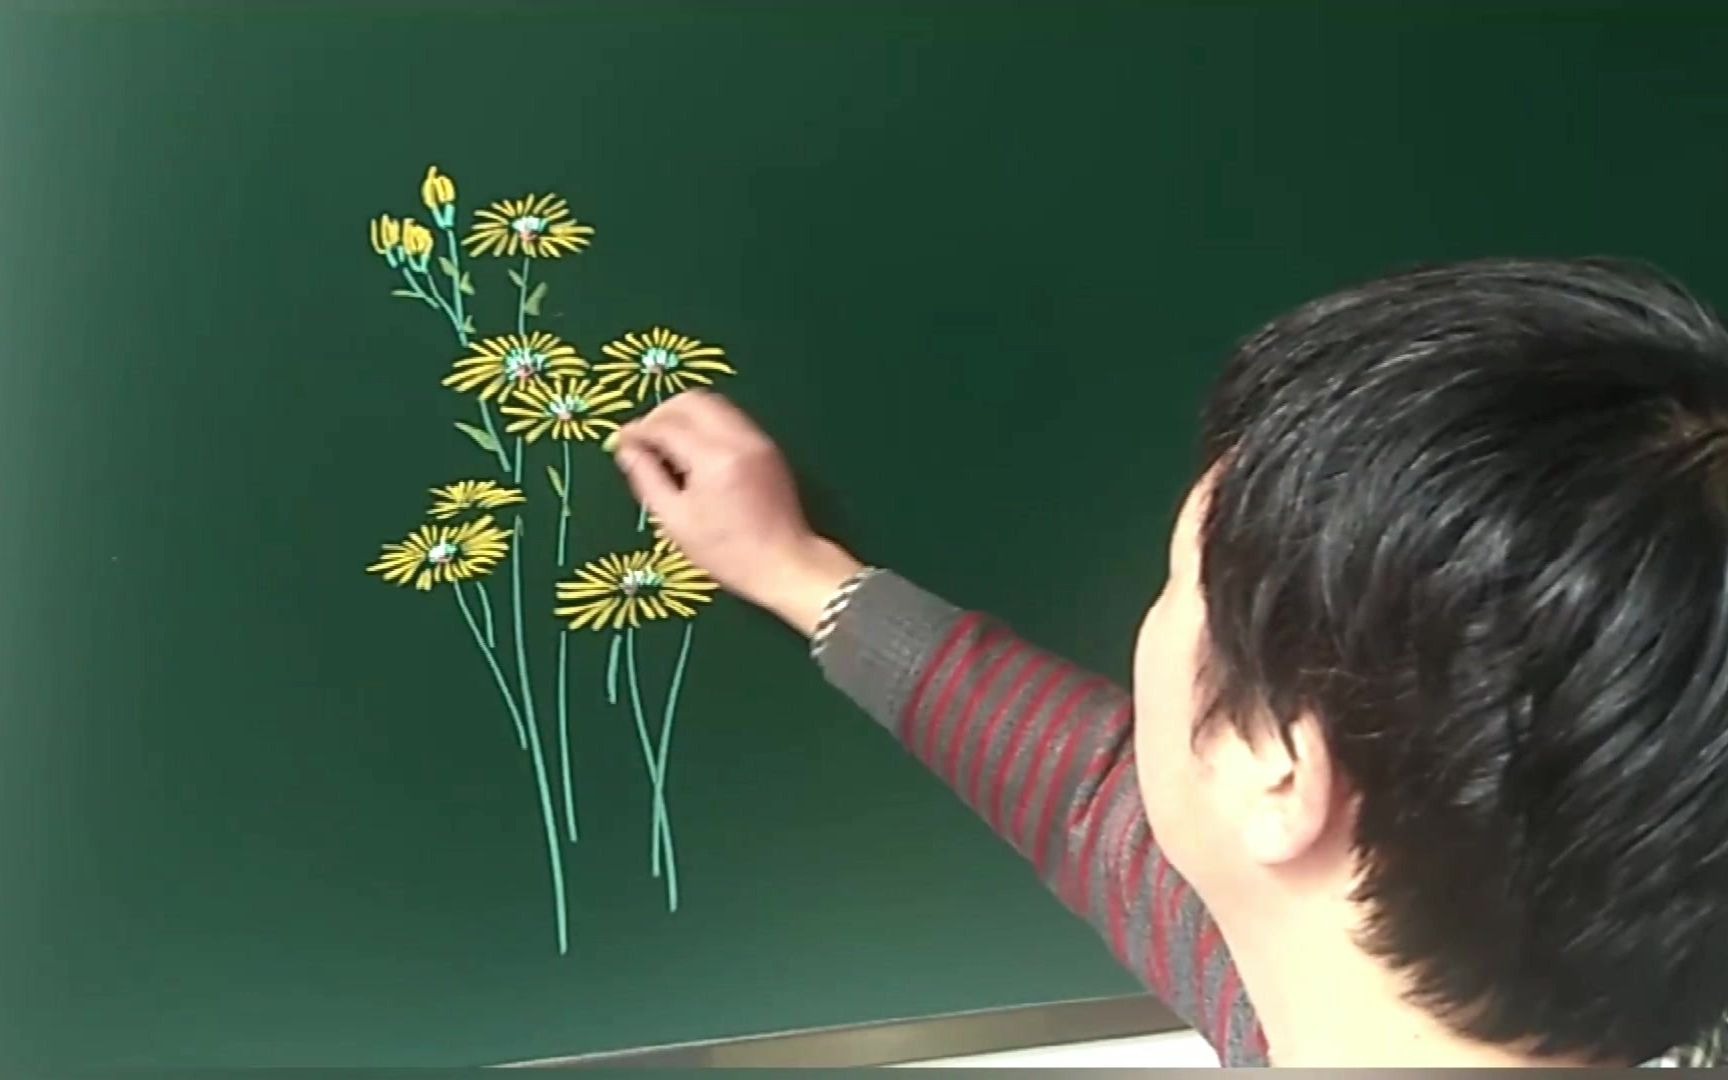 Vẽ hoa cúc bằng phấn là một hoạt động sáng tạo thú vị mà ai cũng có thể làm. Với những nét vẽ tinh tế và sáng tạo, bạn sẽ tạo ra một tác phẩm vô cùng đẹp mắt. Cùng khám phá kỹ thuật vẽ phấn và tạo ra một lĩnh vực nghệ thuật mới!